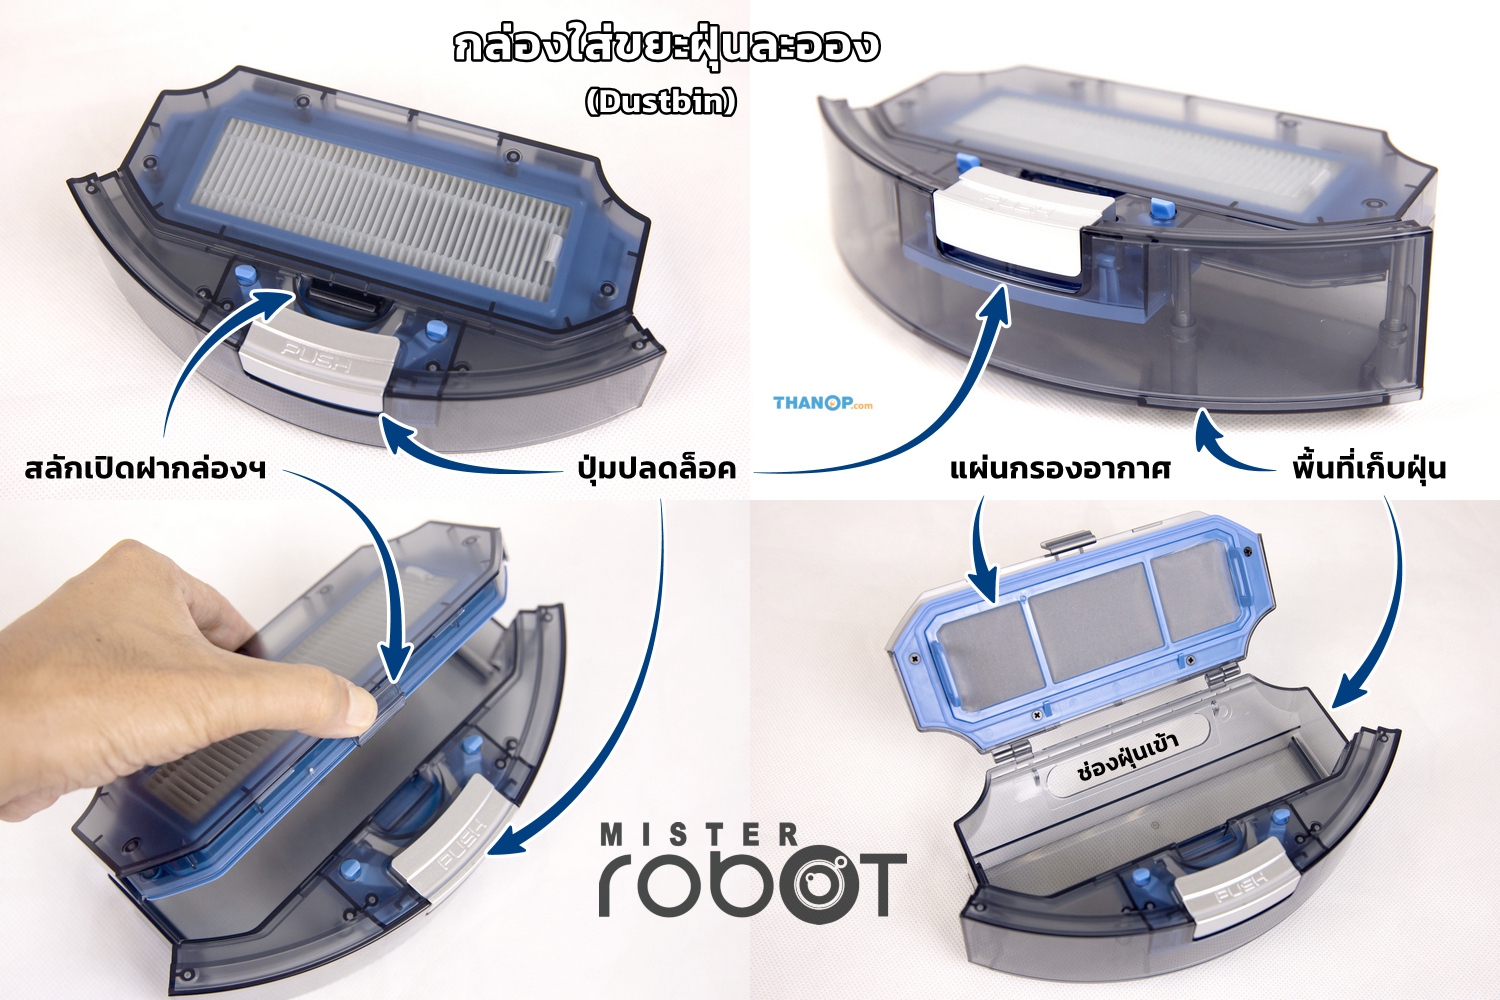 ภาพประกอบของ Mister​ ​Robot อะไหล่ (แปรงปัดข้าง​1คู่)/(HEPAแผ่นกรองฝุ่น1ชิ้น) Side​Brush​ อะไหล่​ ​รุ่น​ Hybrid หุ่นยนต์ถูพื้น Irobotcleaner เครื่องดูดฝุ่น